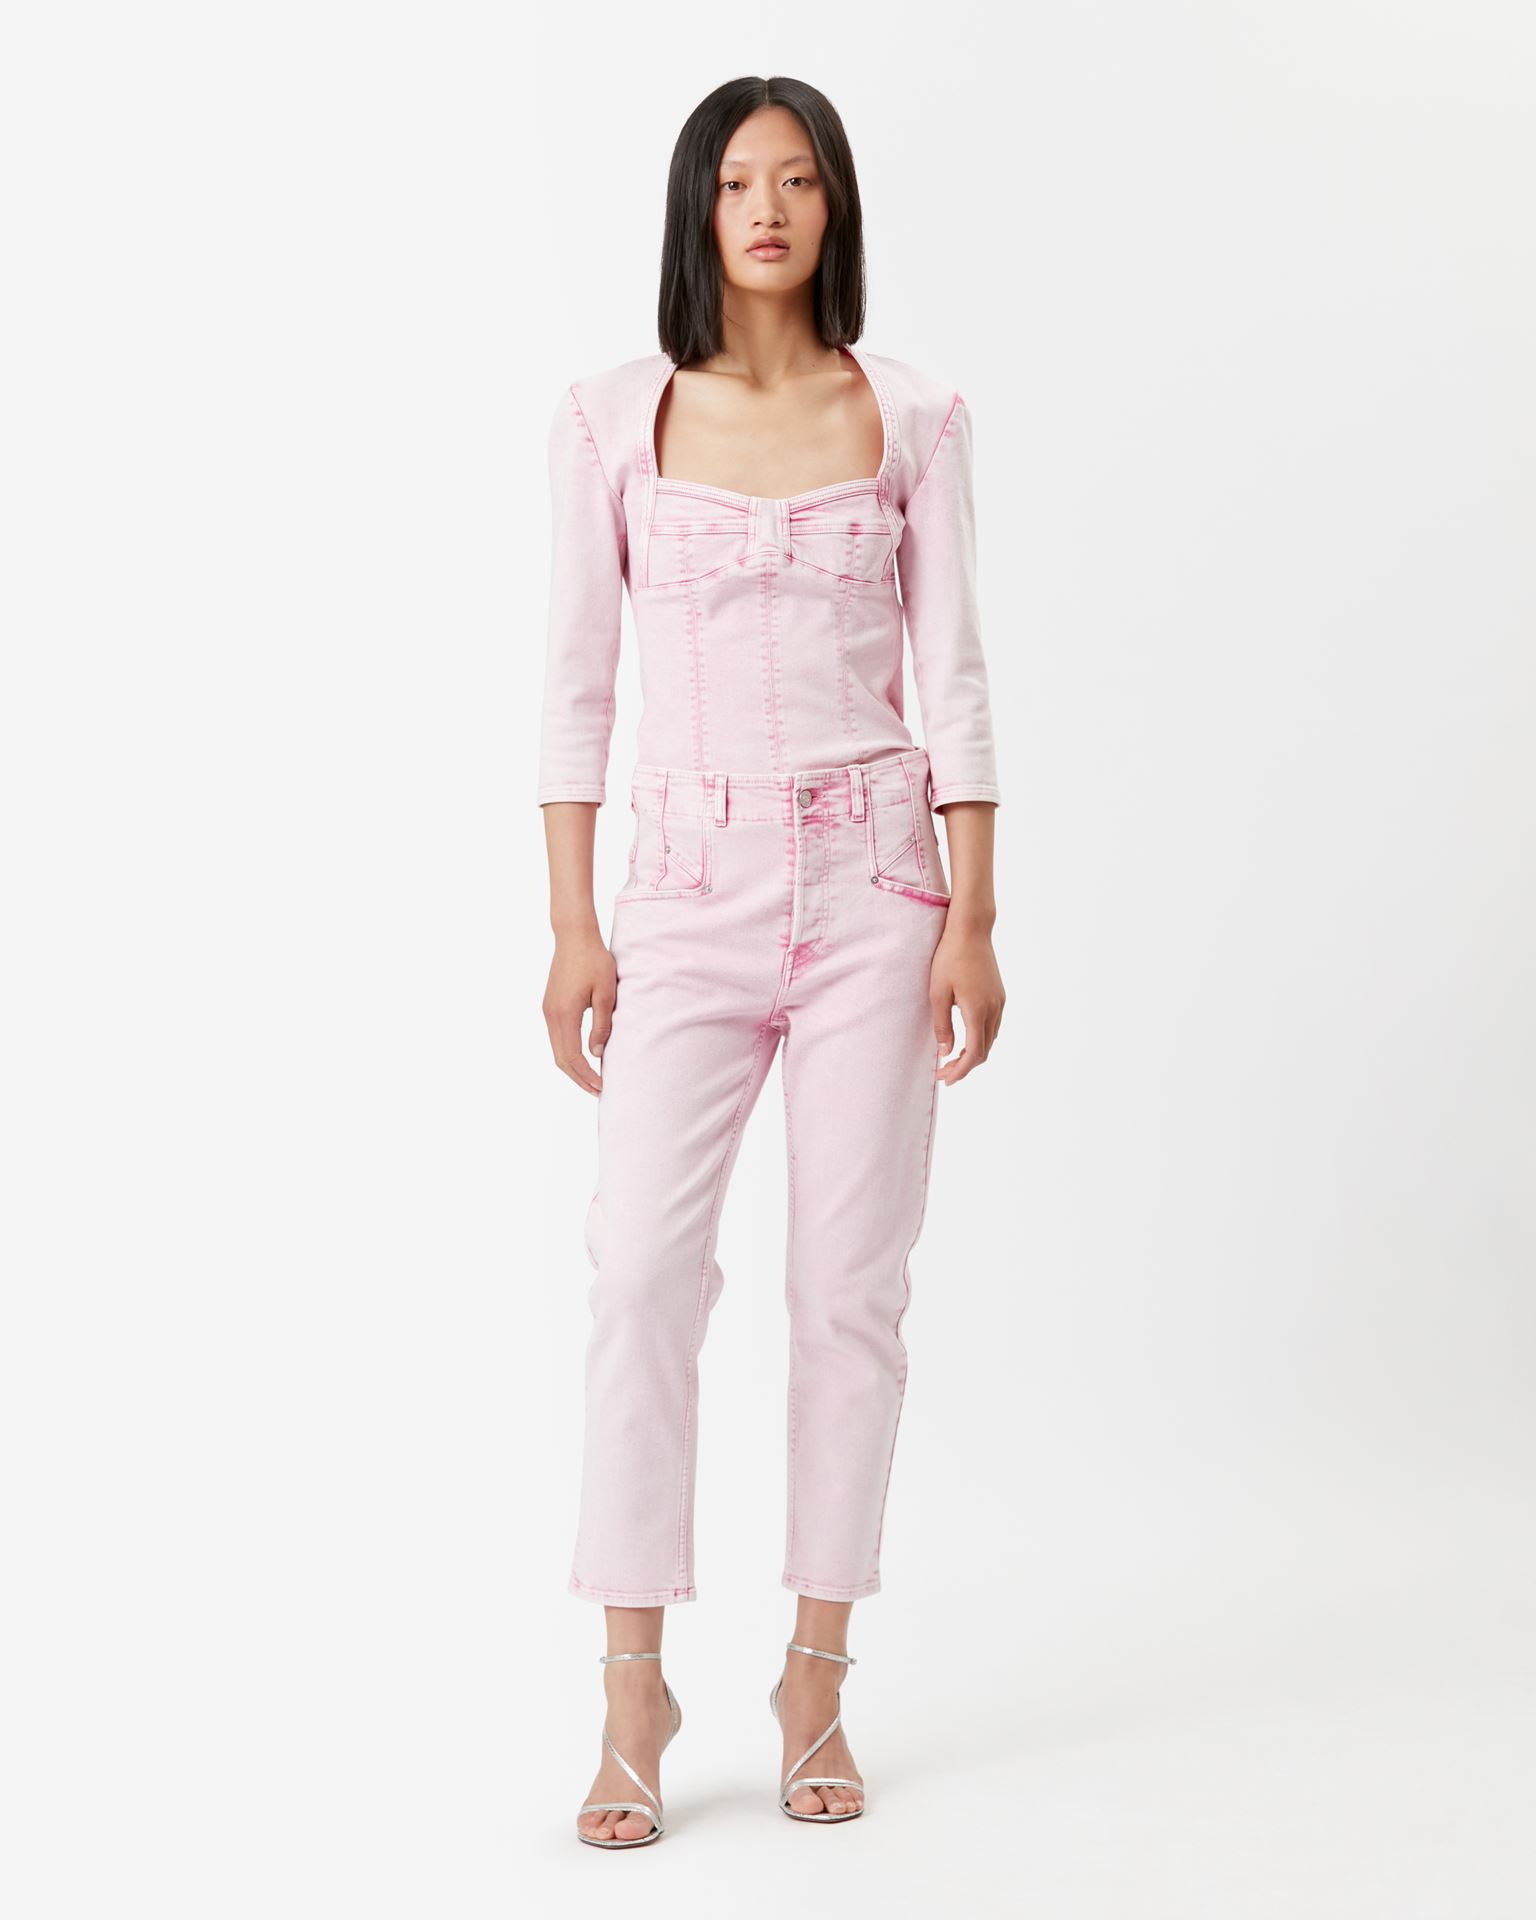 Isabel Marant, Vanio Cotton Top - Women - Pink